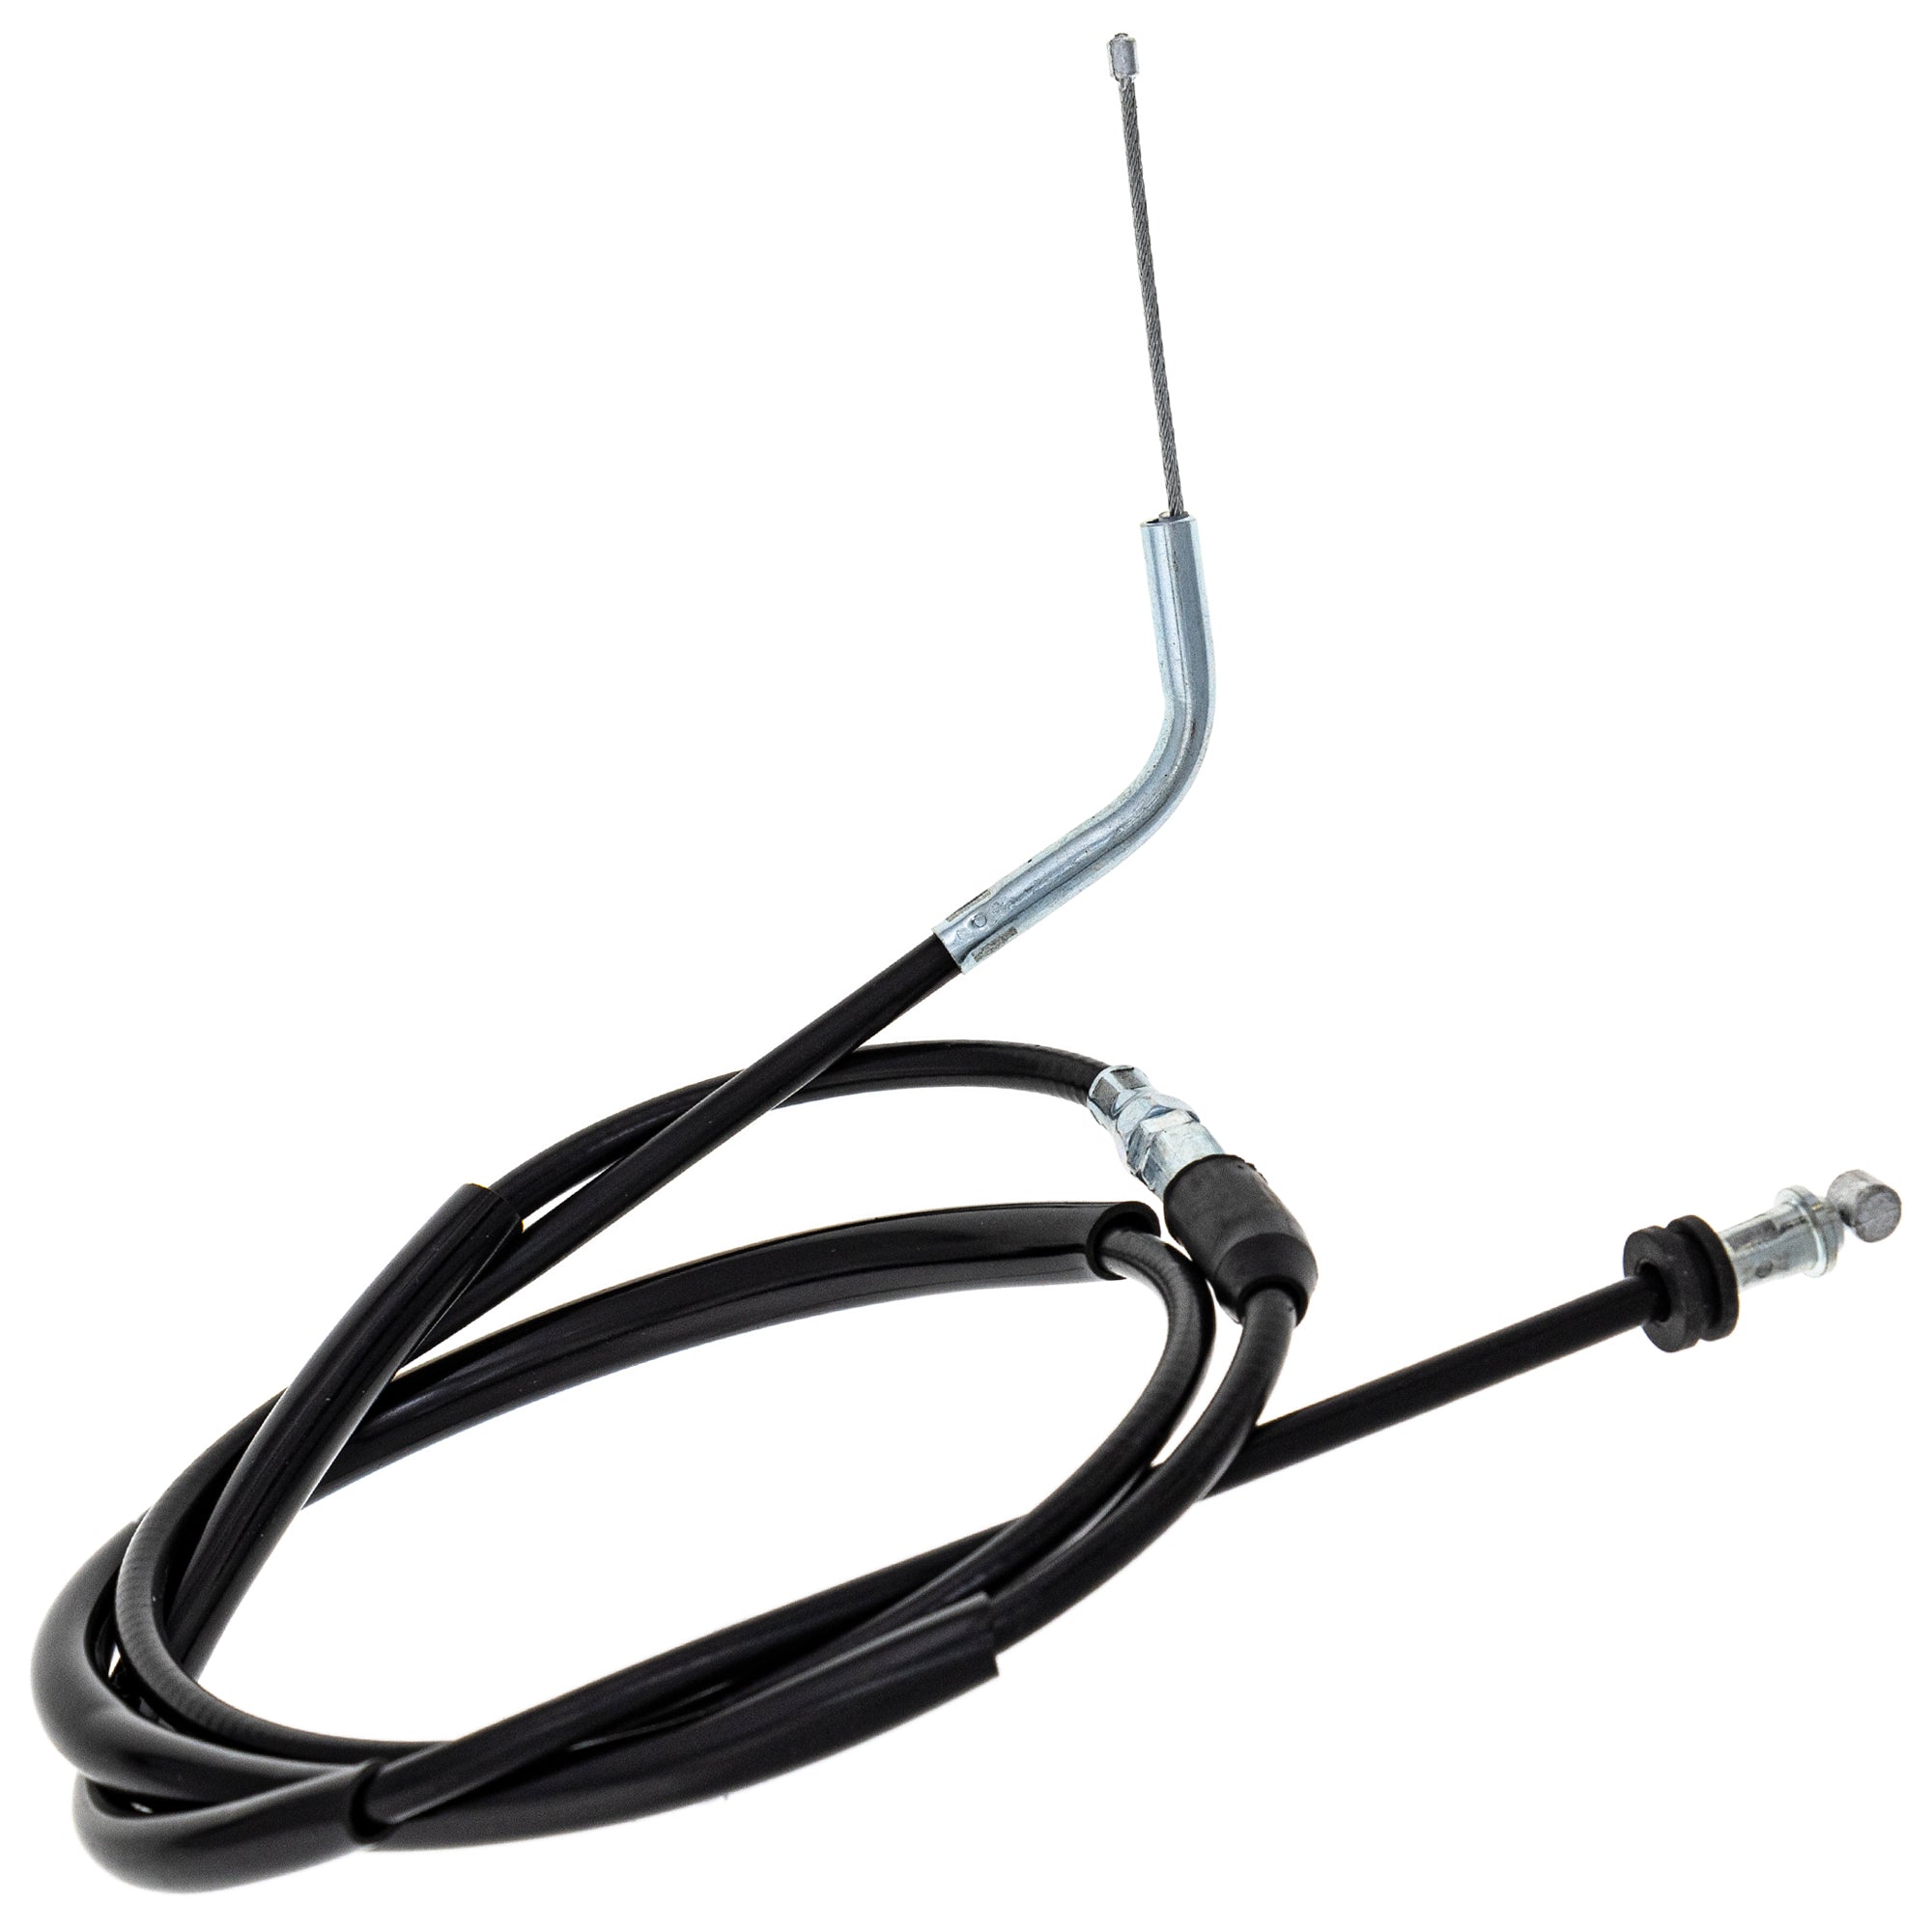 Throttle Cable for Suzuki LT230E Quadrunner LT250 58300-35B01